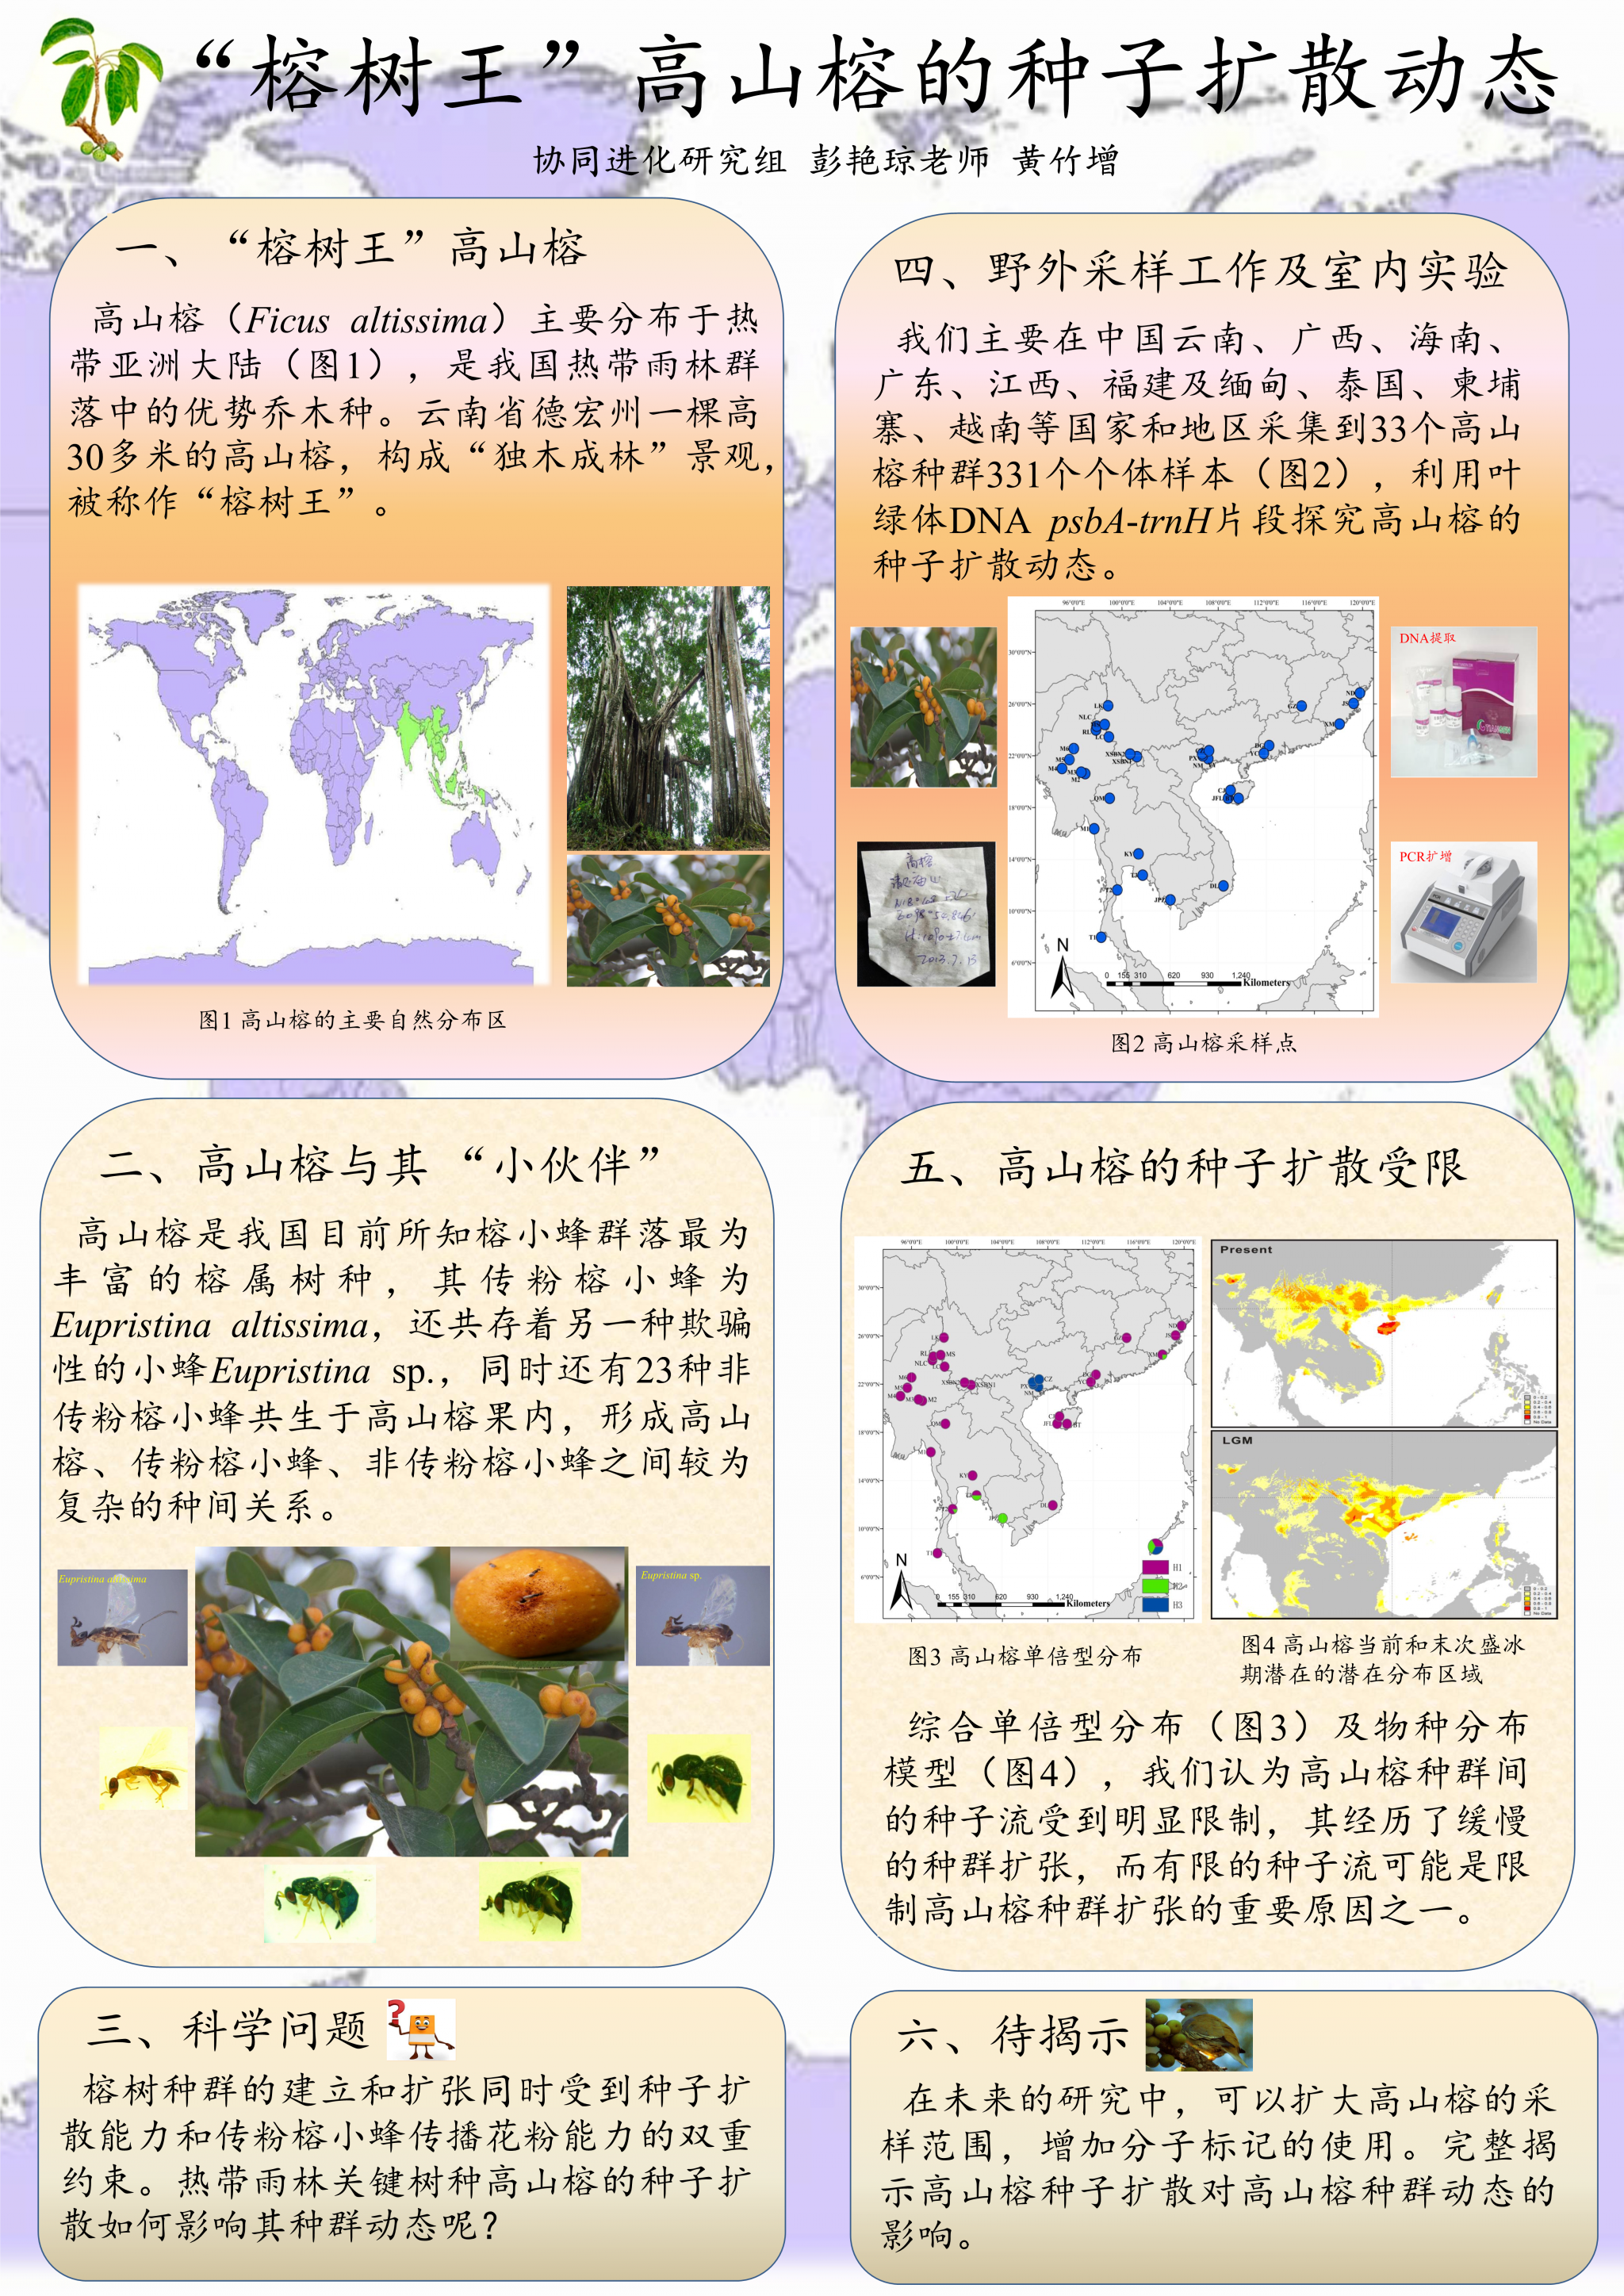 黄竹增-高山榕的种子扩散动态